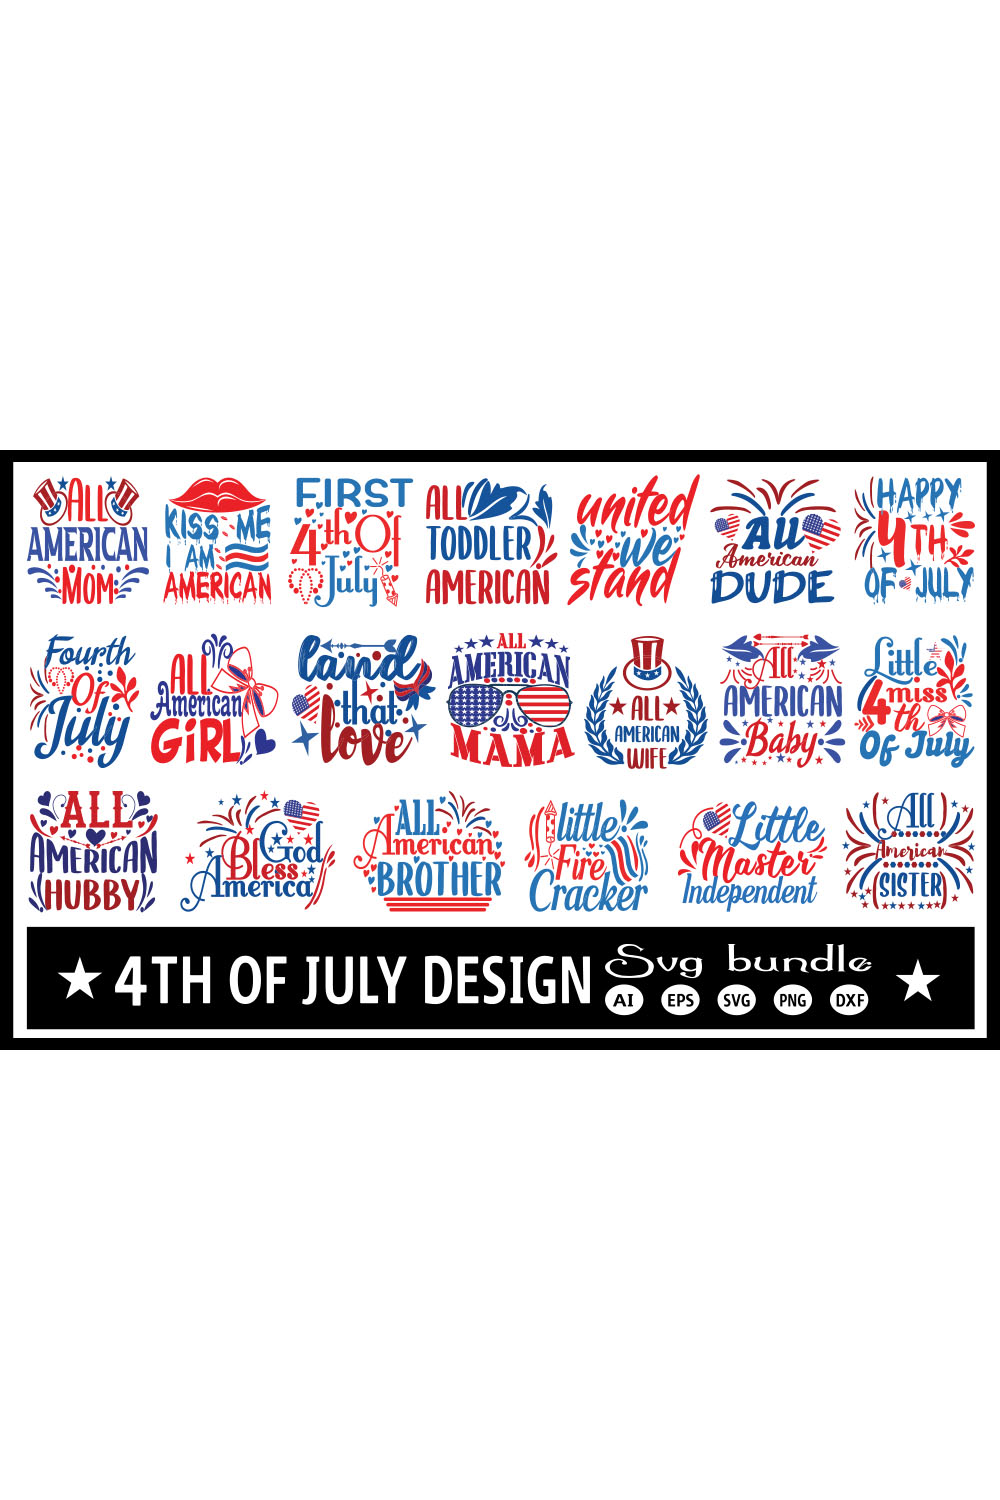 4th of July SVG Design pinterest image.